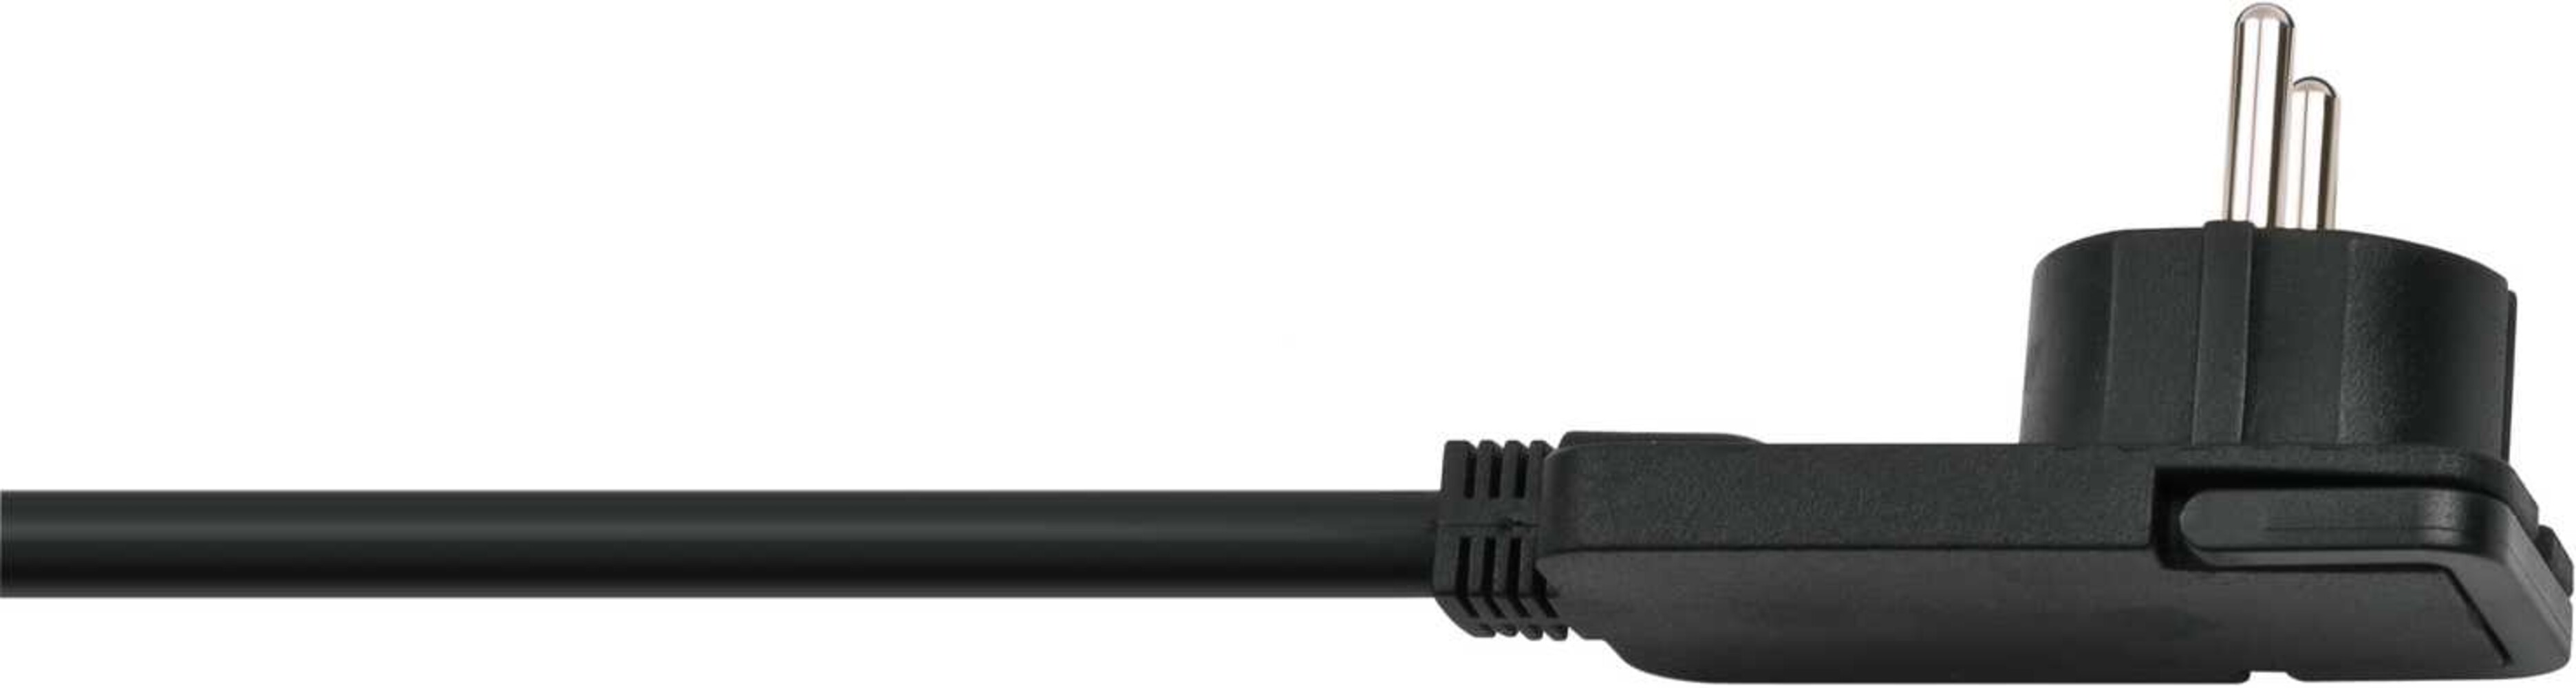 Steckdosenleiste mit Schalter von Brennenstuhl Comfort Line Plus 6-fach 2m Kabel schwarz